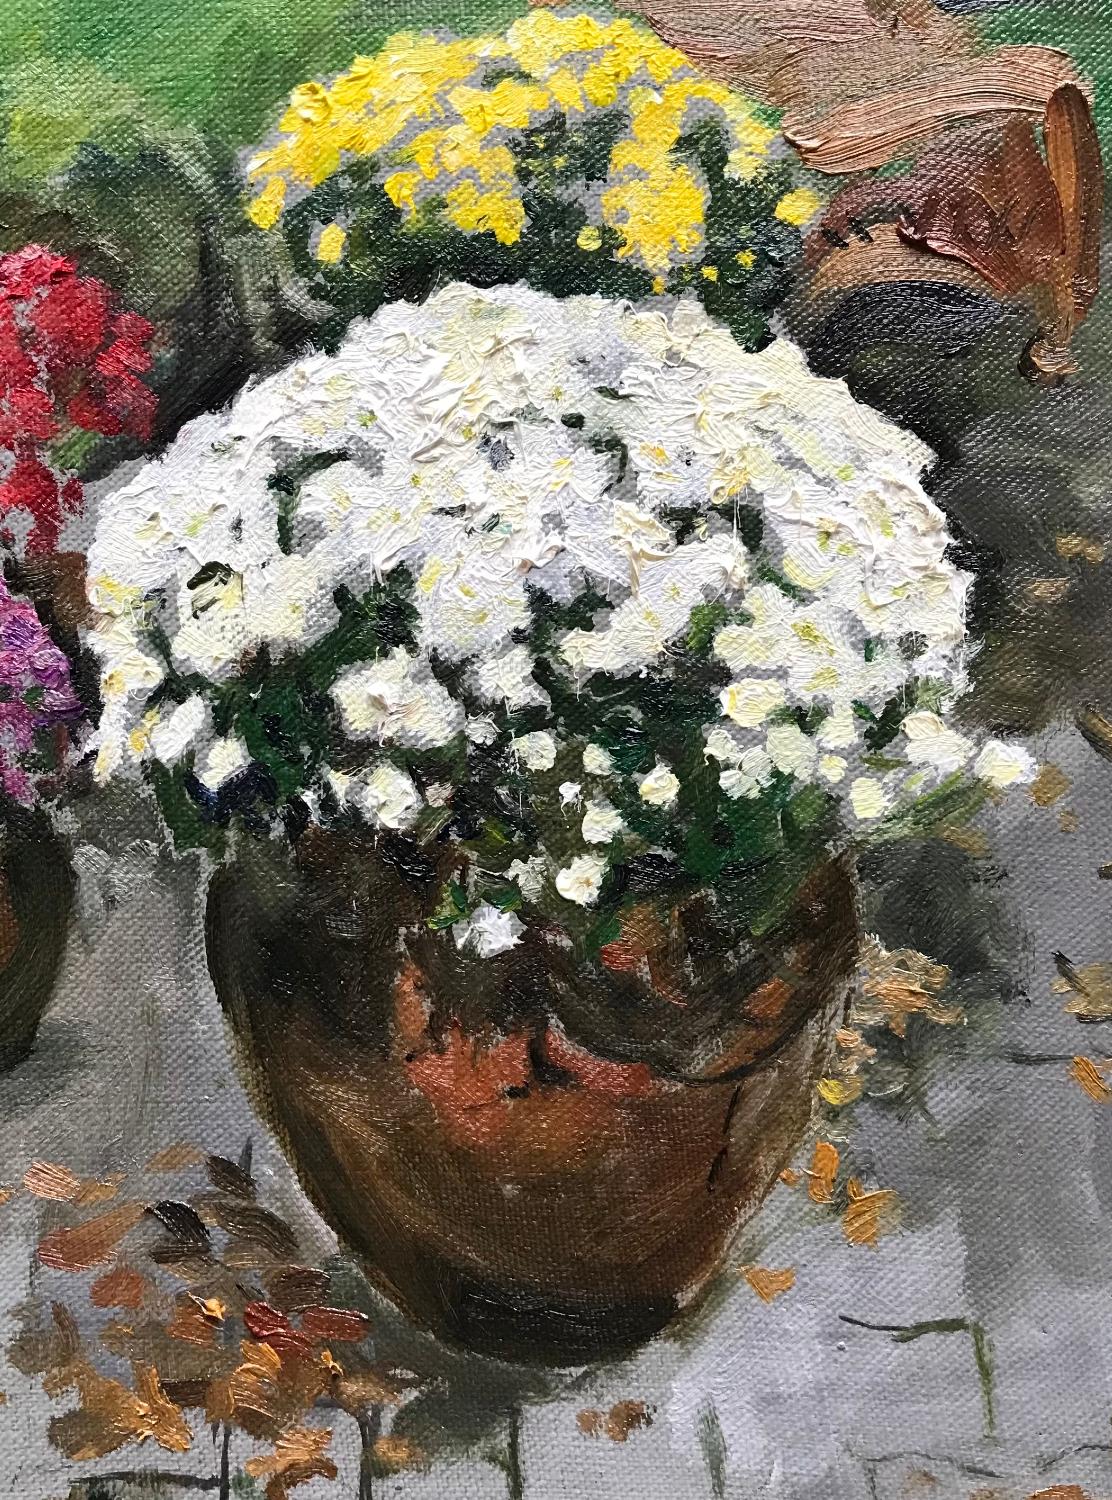  Mums, 12 x 9, huile, couleurs, beauté de la nature, impressionnisme, fleurs  - Painting de  Eric Santoli